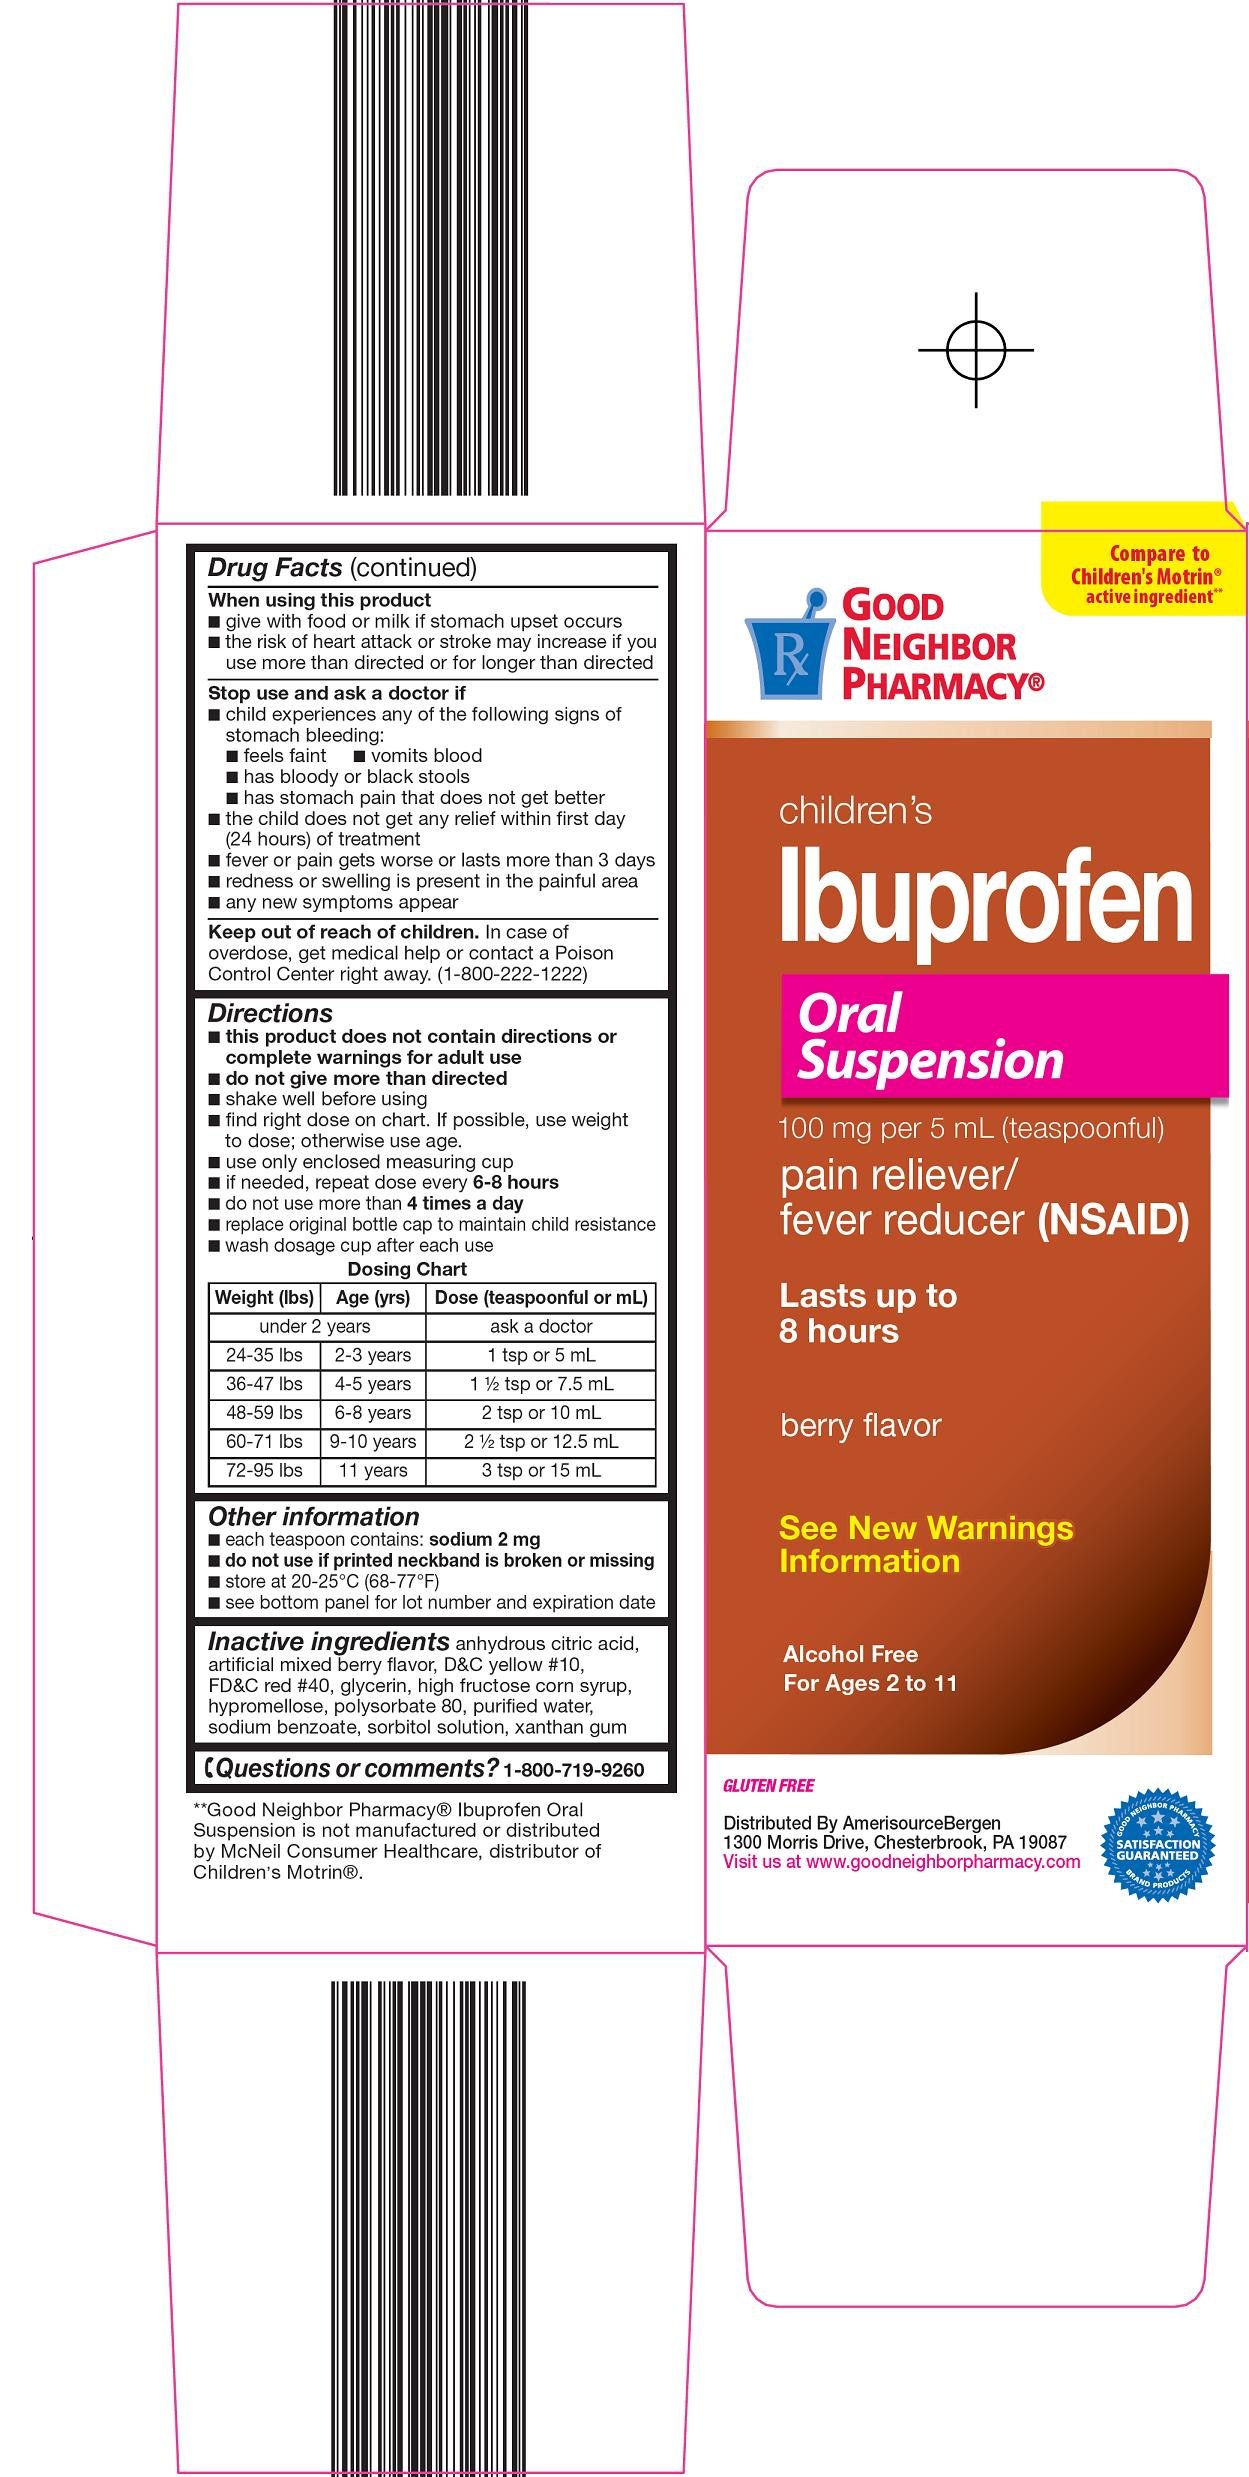 Ibuprofen Oral Suspension Carton Image 2